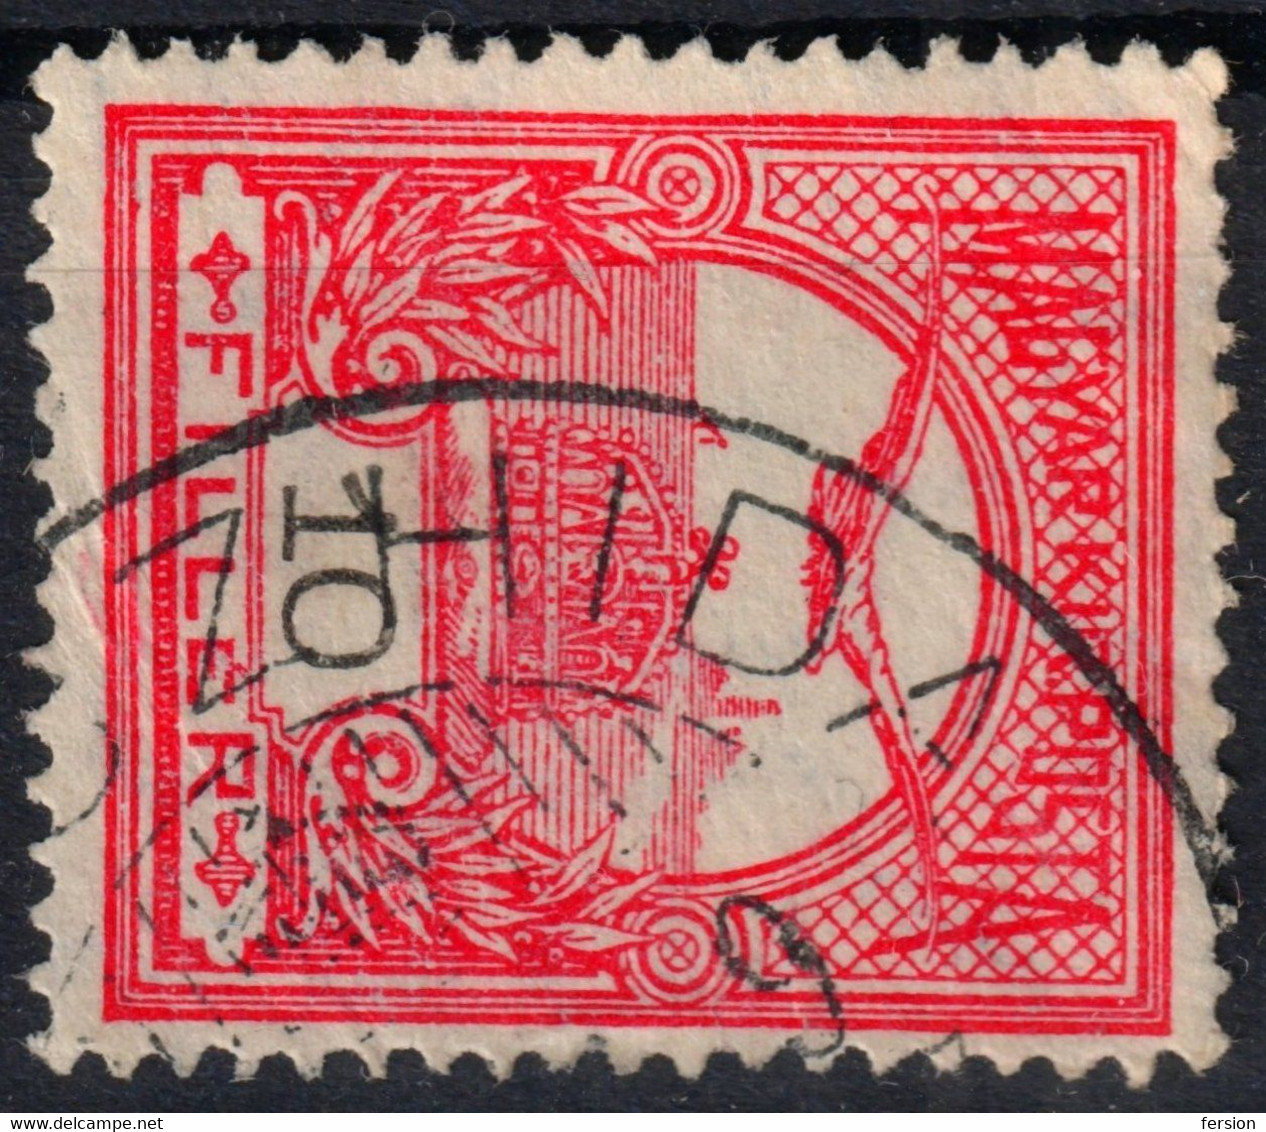 BONCZHIDA Bonțida Postmark / TURUL Crown 1910's Hungary Romania Banat Transylvania KOLOZS County KuK K.u.K - 10 Fill - Transsylvanië